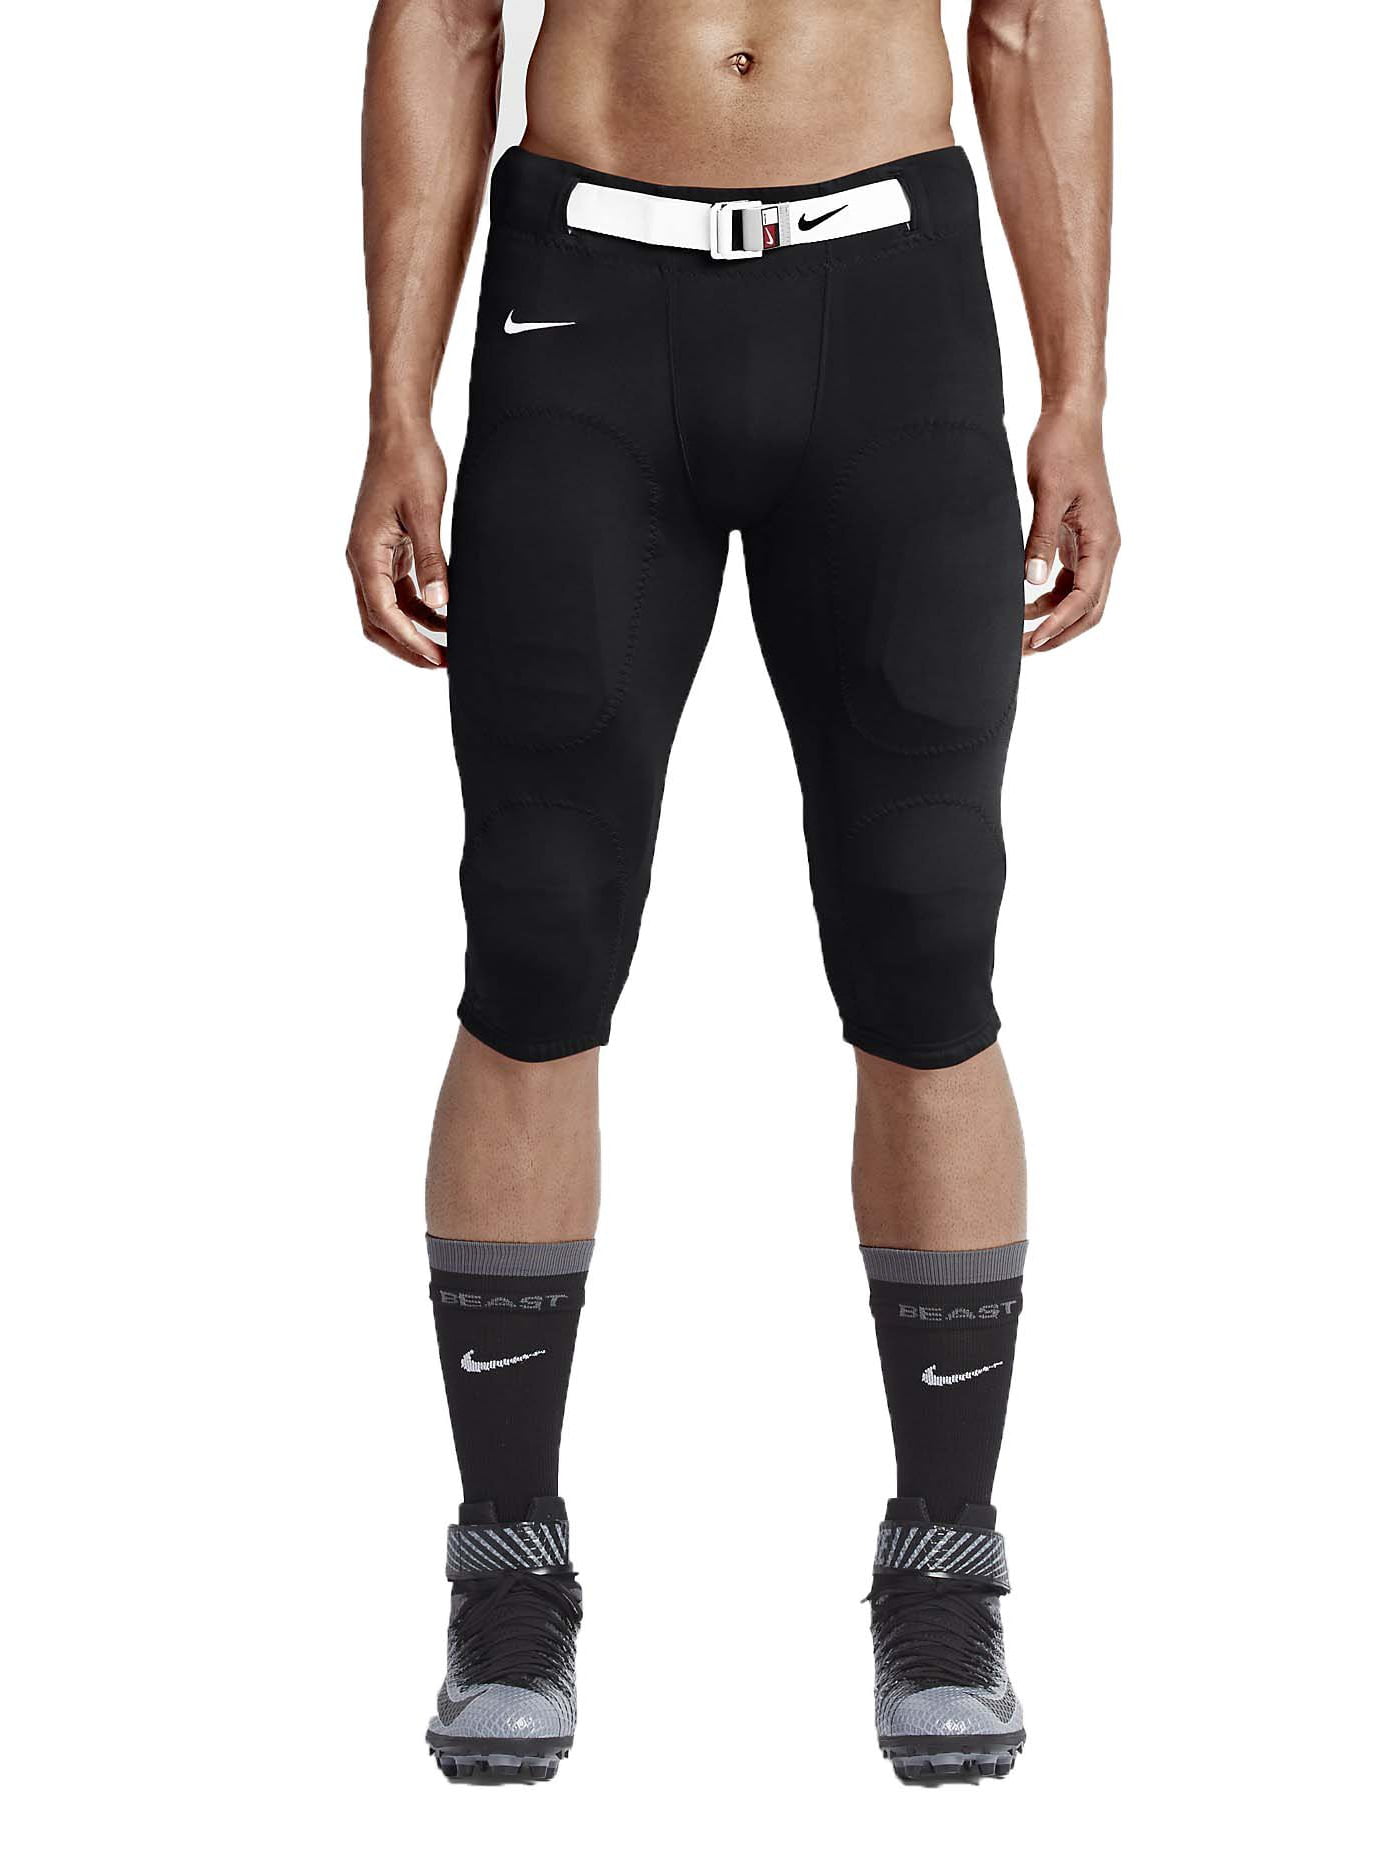 Stock Open Field Football Pants-Black 